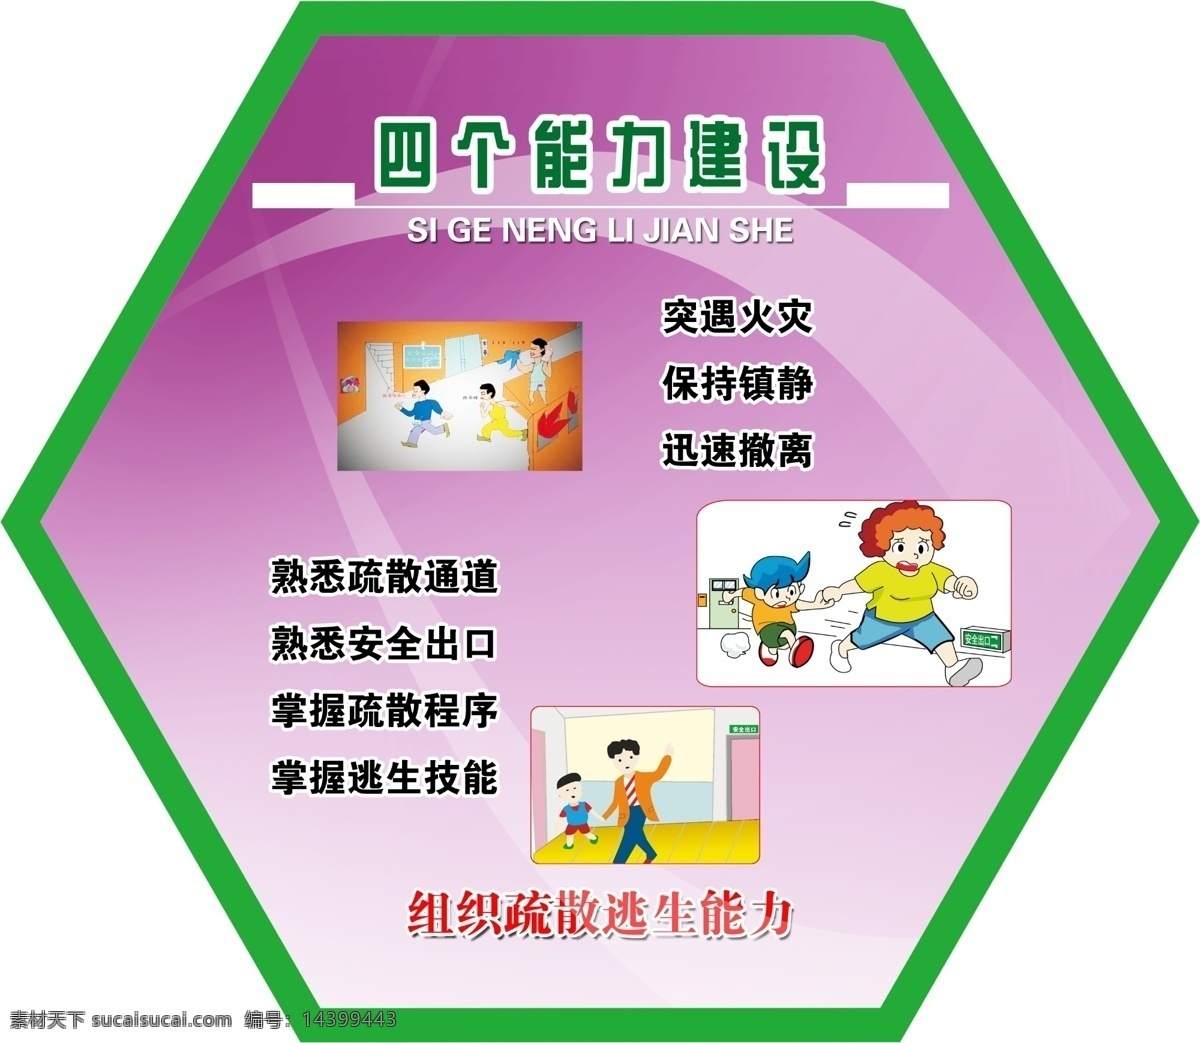 四个能力建设 消防 异形展板 消防安全 矢量人物 孩子 消防漫画 展板模板 广告设计模板 源文件